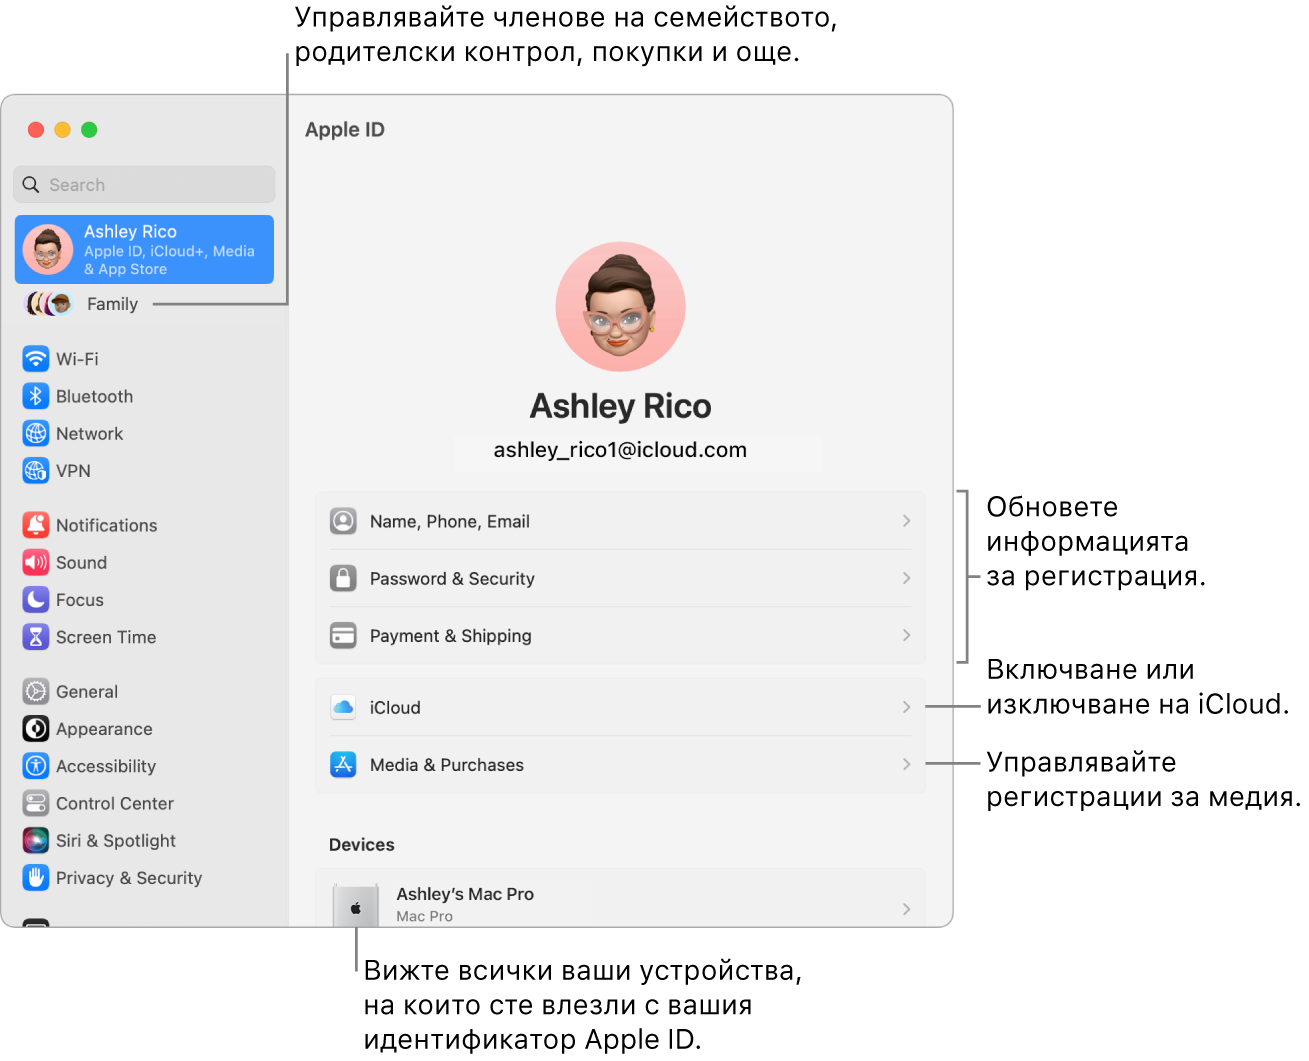 Панелът Apple ID в System Settings (Системни настройки) с изнесени означения за обновяване на информация за регистрация, включване и изключване на функции на iCloud, управление на регистрации за медийно съдържание и Family (Семейство), от където можете да управлявате членове на семейството, родителски контрол, покупки и други.